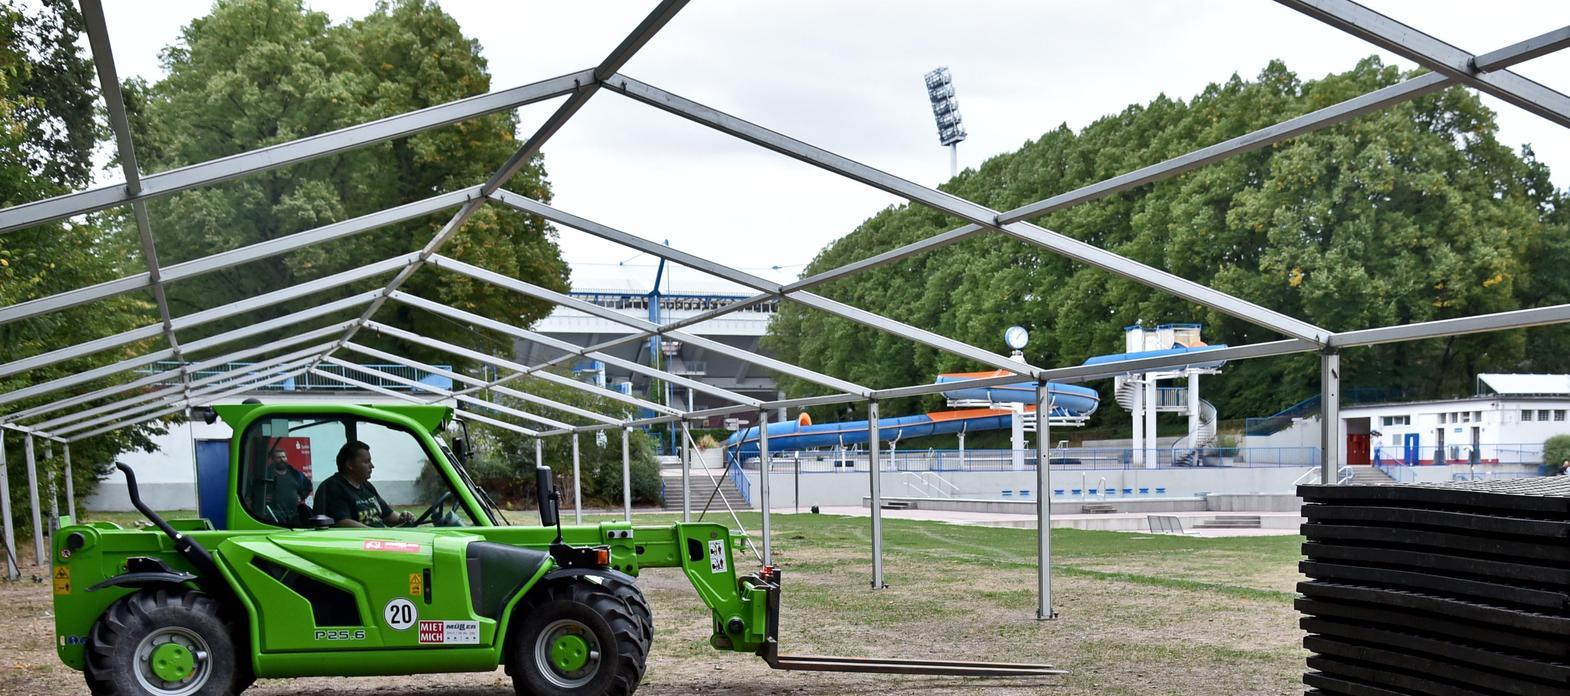 Flüchtlinge in Nürnberg: Im Stadionbad wächst eine Zeltstadt